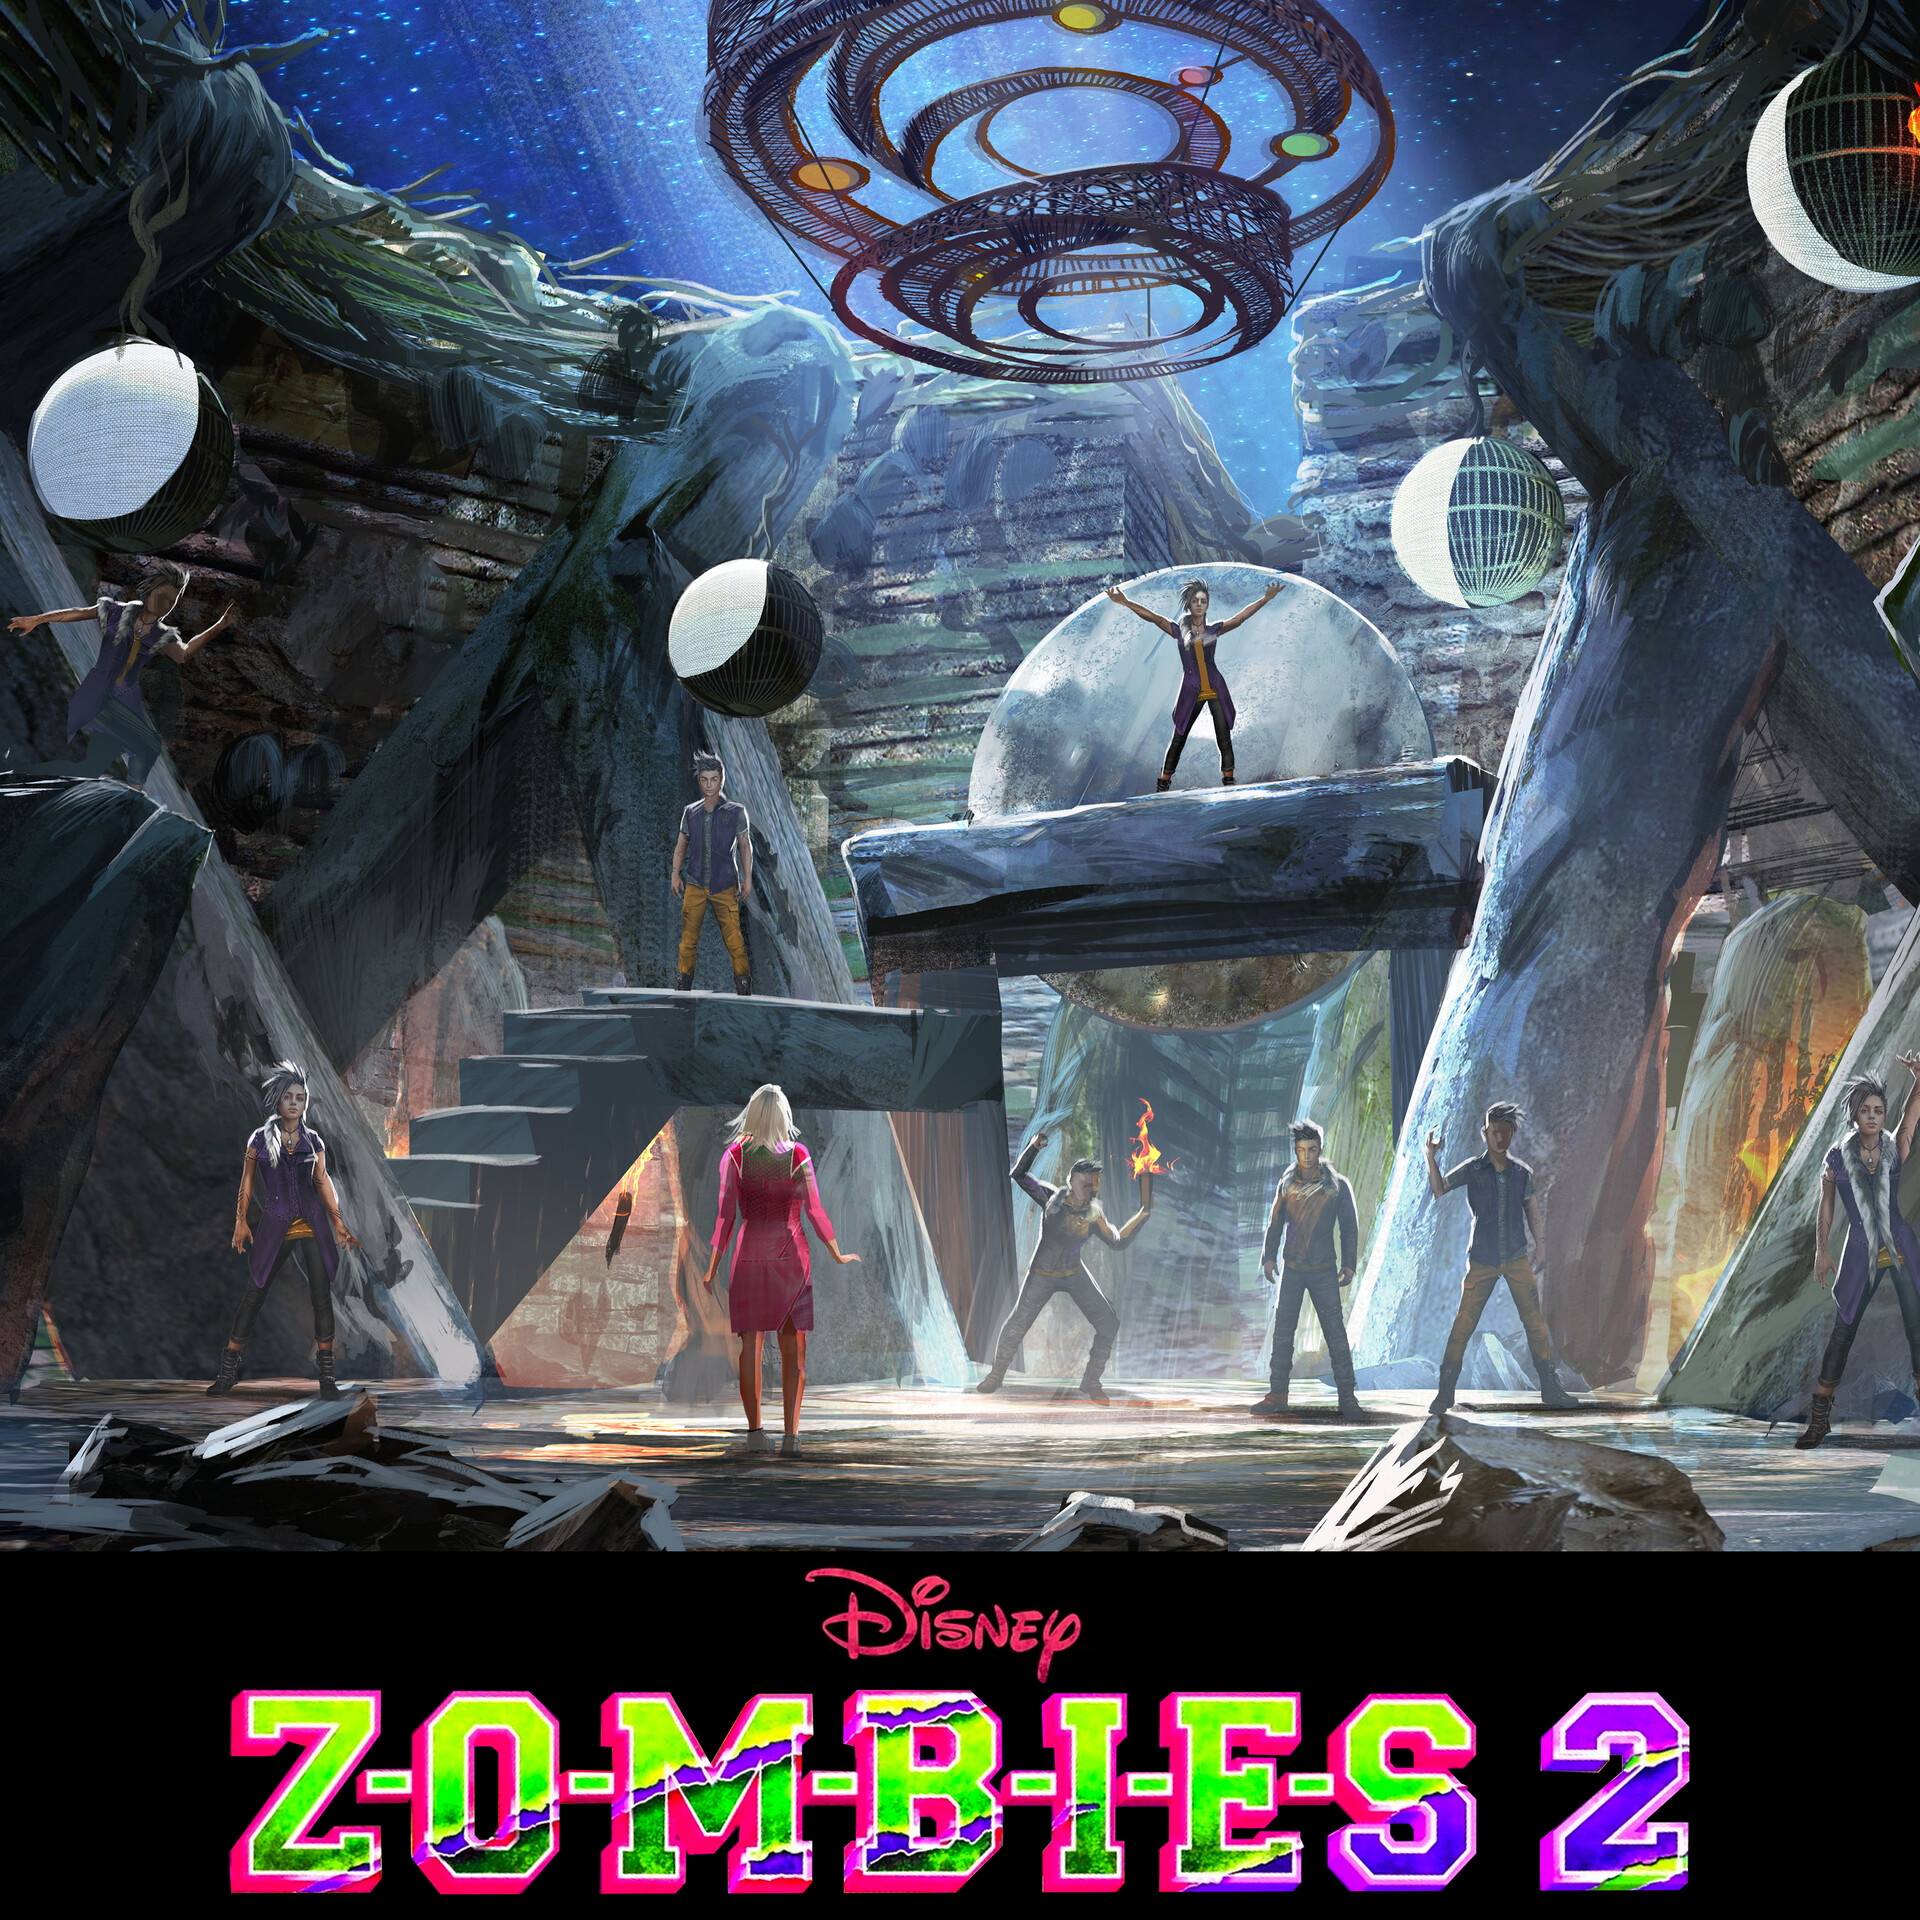 Disney's Z-O-M-B-I-E-S 2 — MARK HOFELING DESIGN